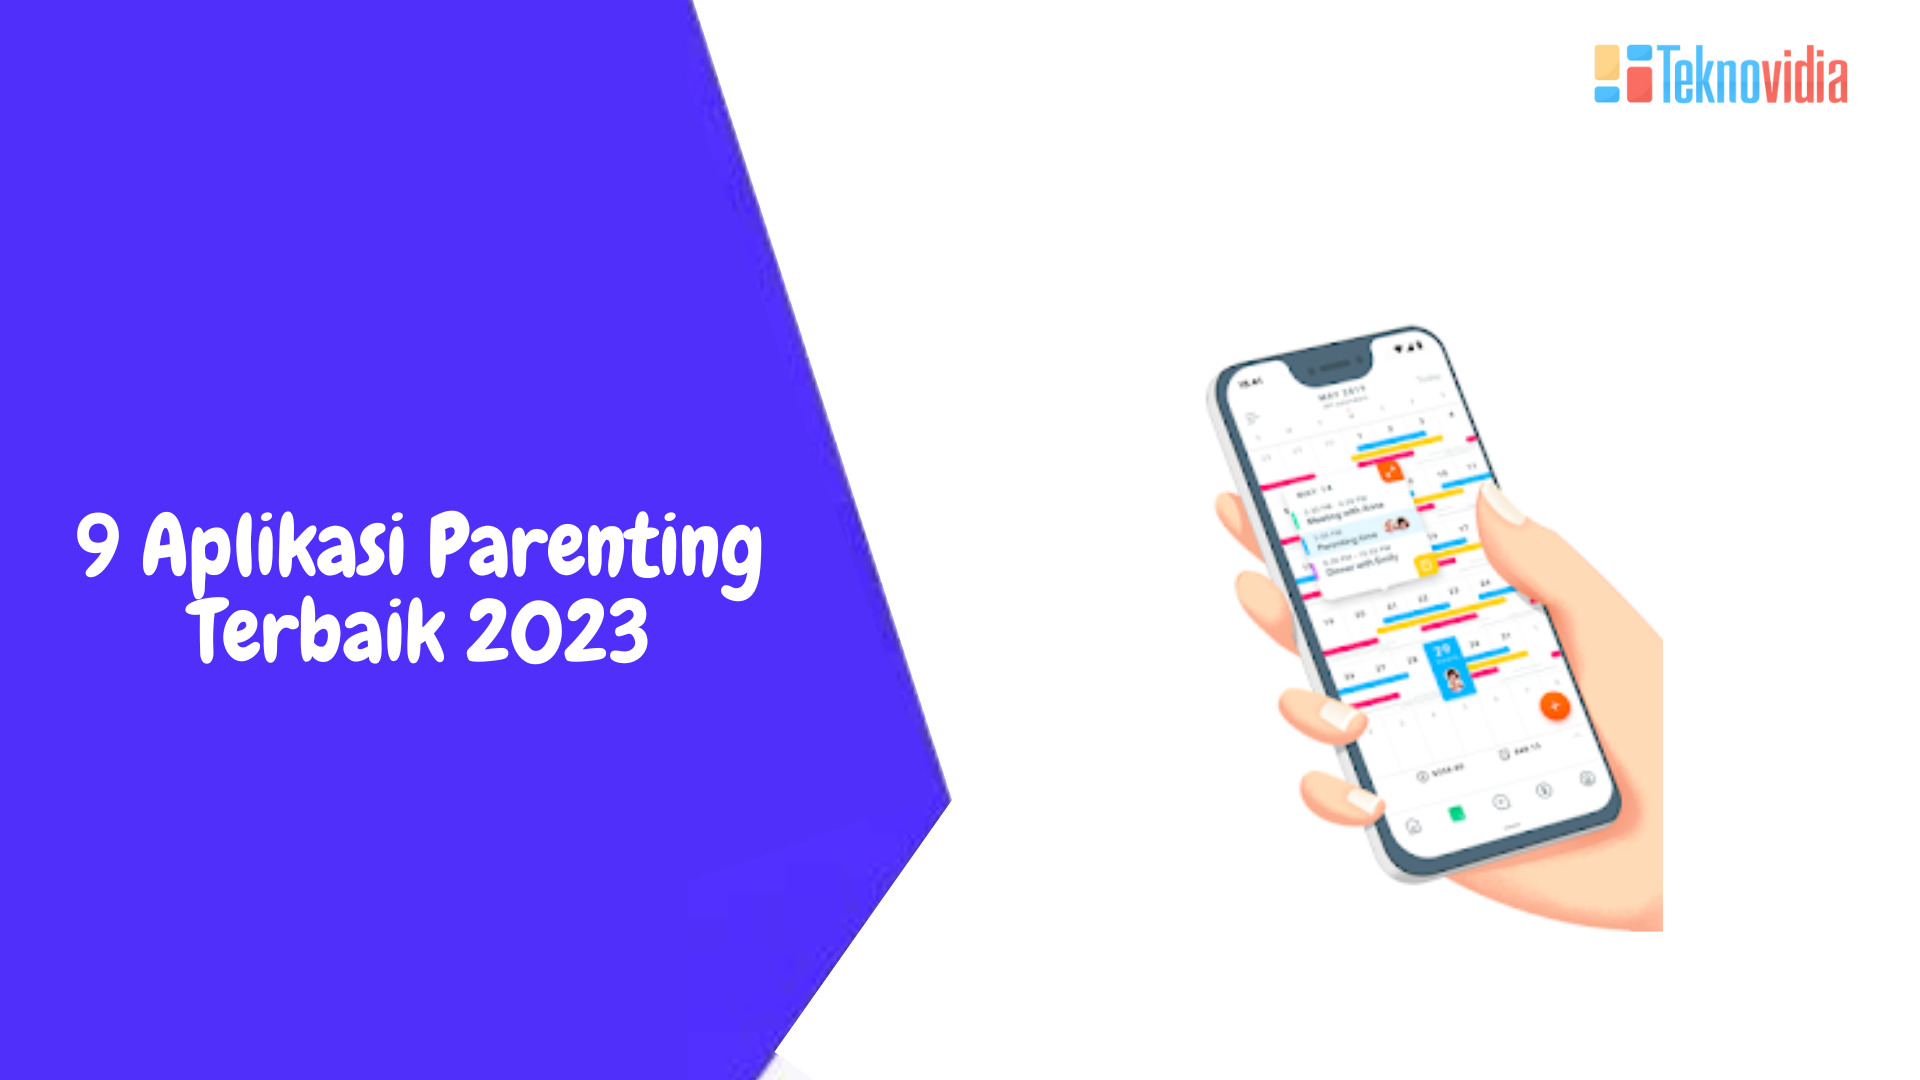 9 Aplikasi Parenting Terbaik 2023